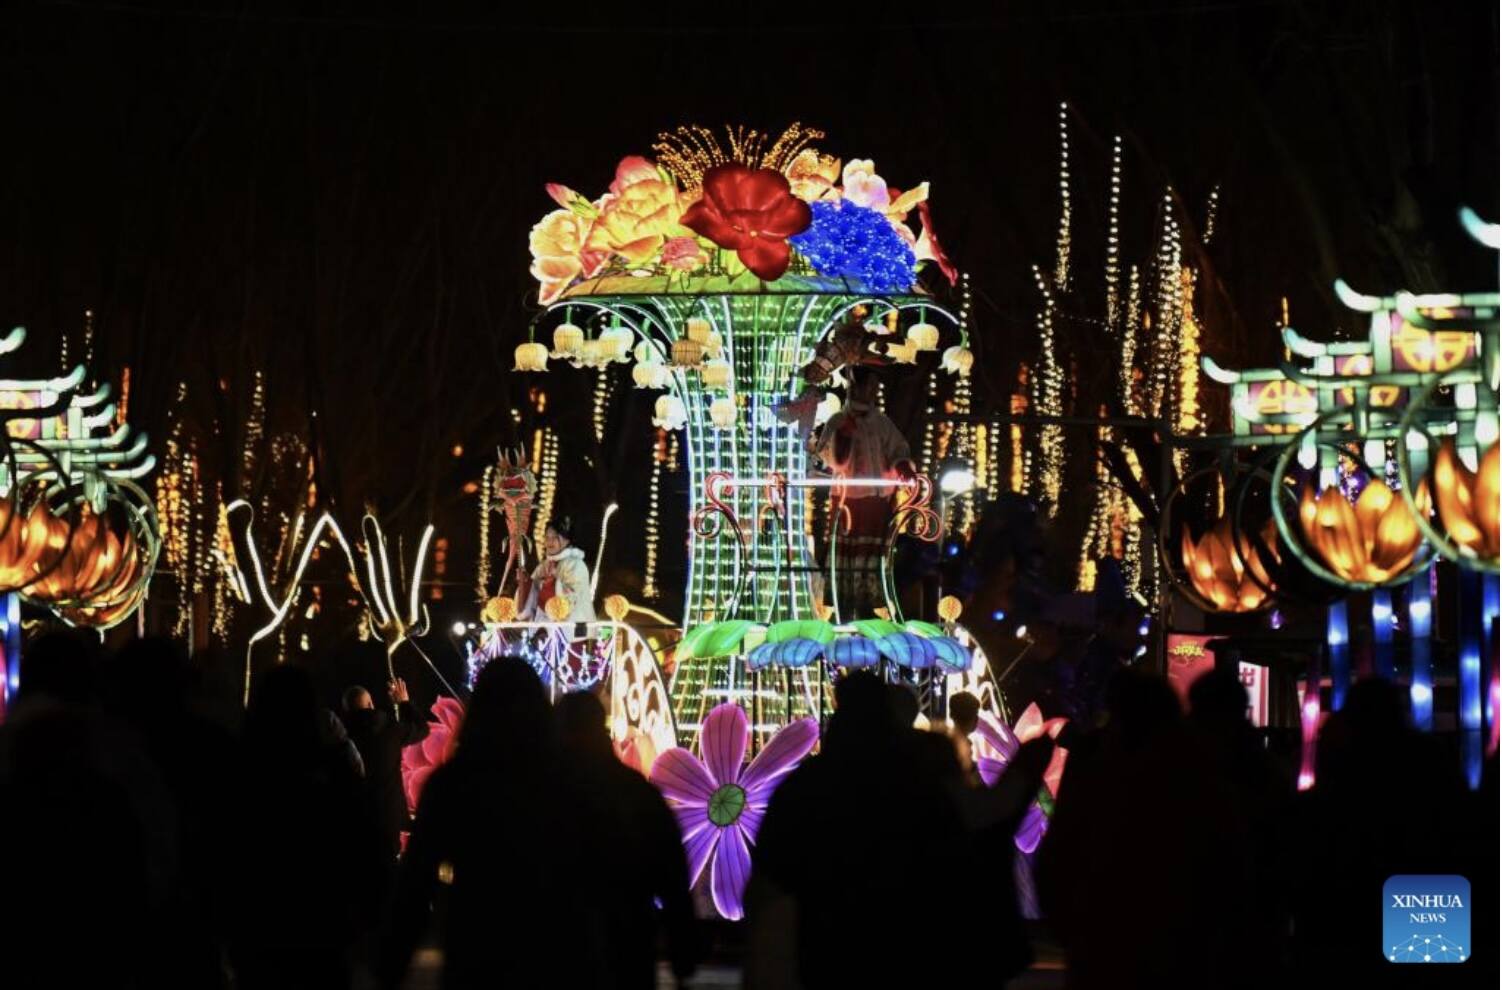 Những chiếc đèn lồng rực rỡ được trang trí theo nhiều chủ đề khác nhau, gợi không khí đón Tết rộn ràng ở các đô thị khắp Trung Quốc. Ảnh: Xinhua